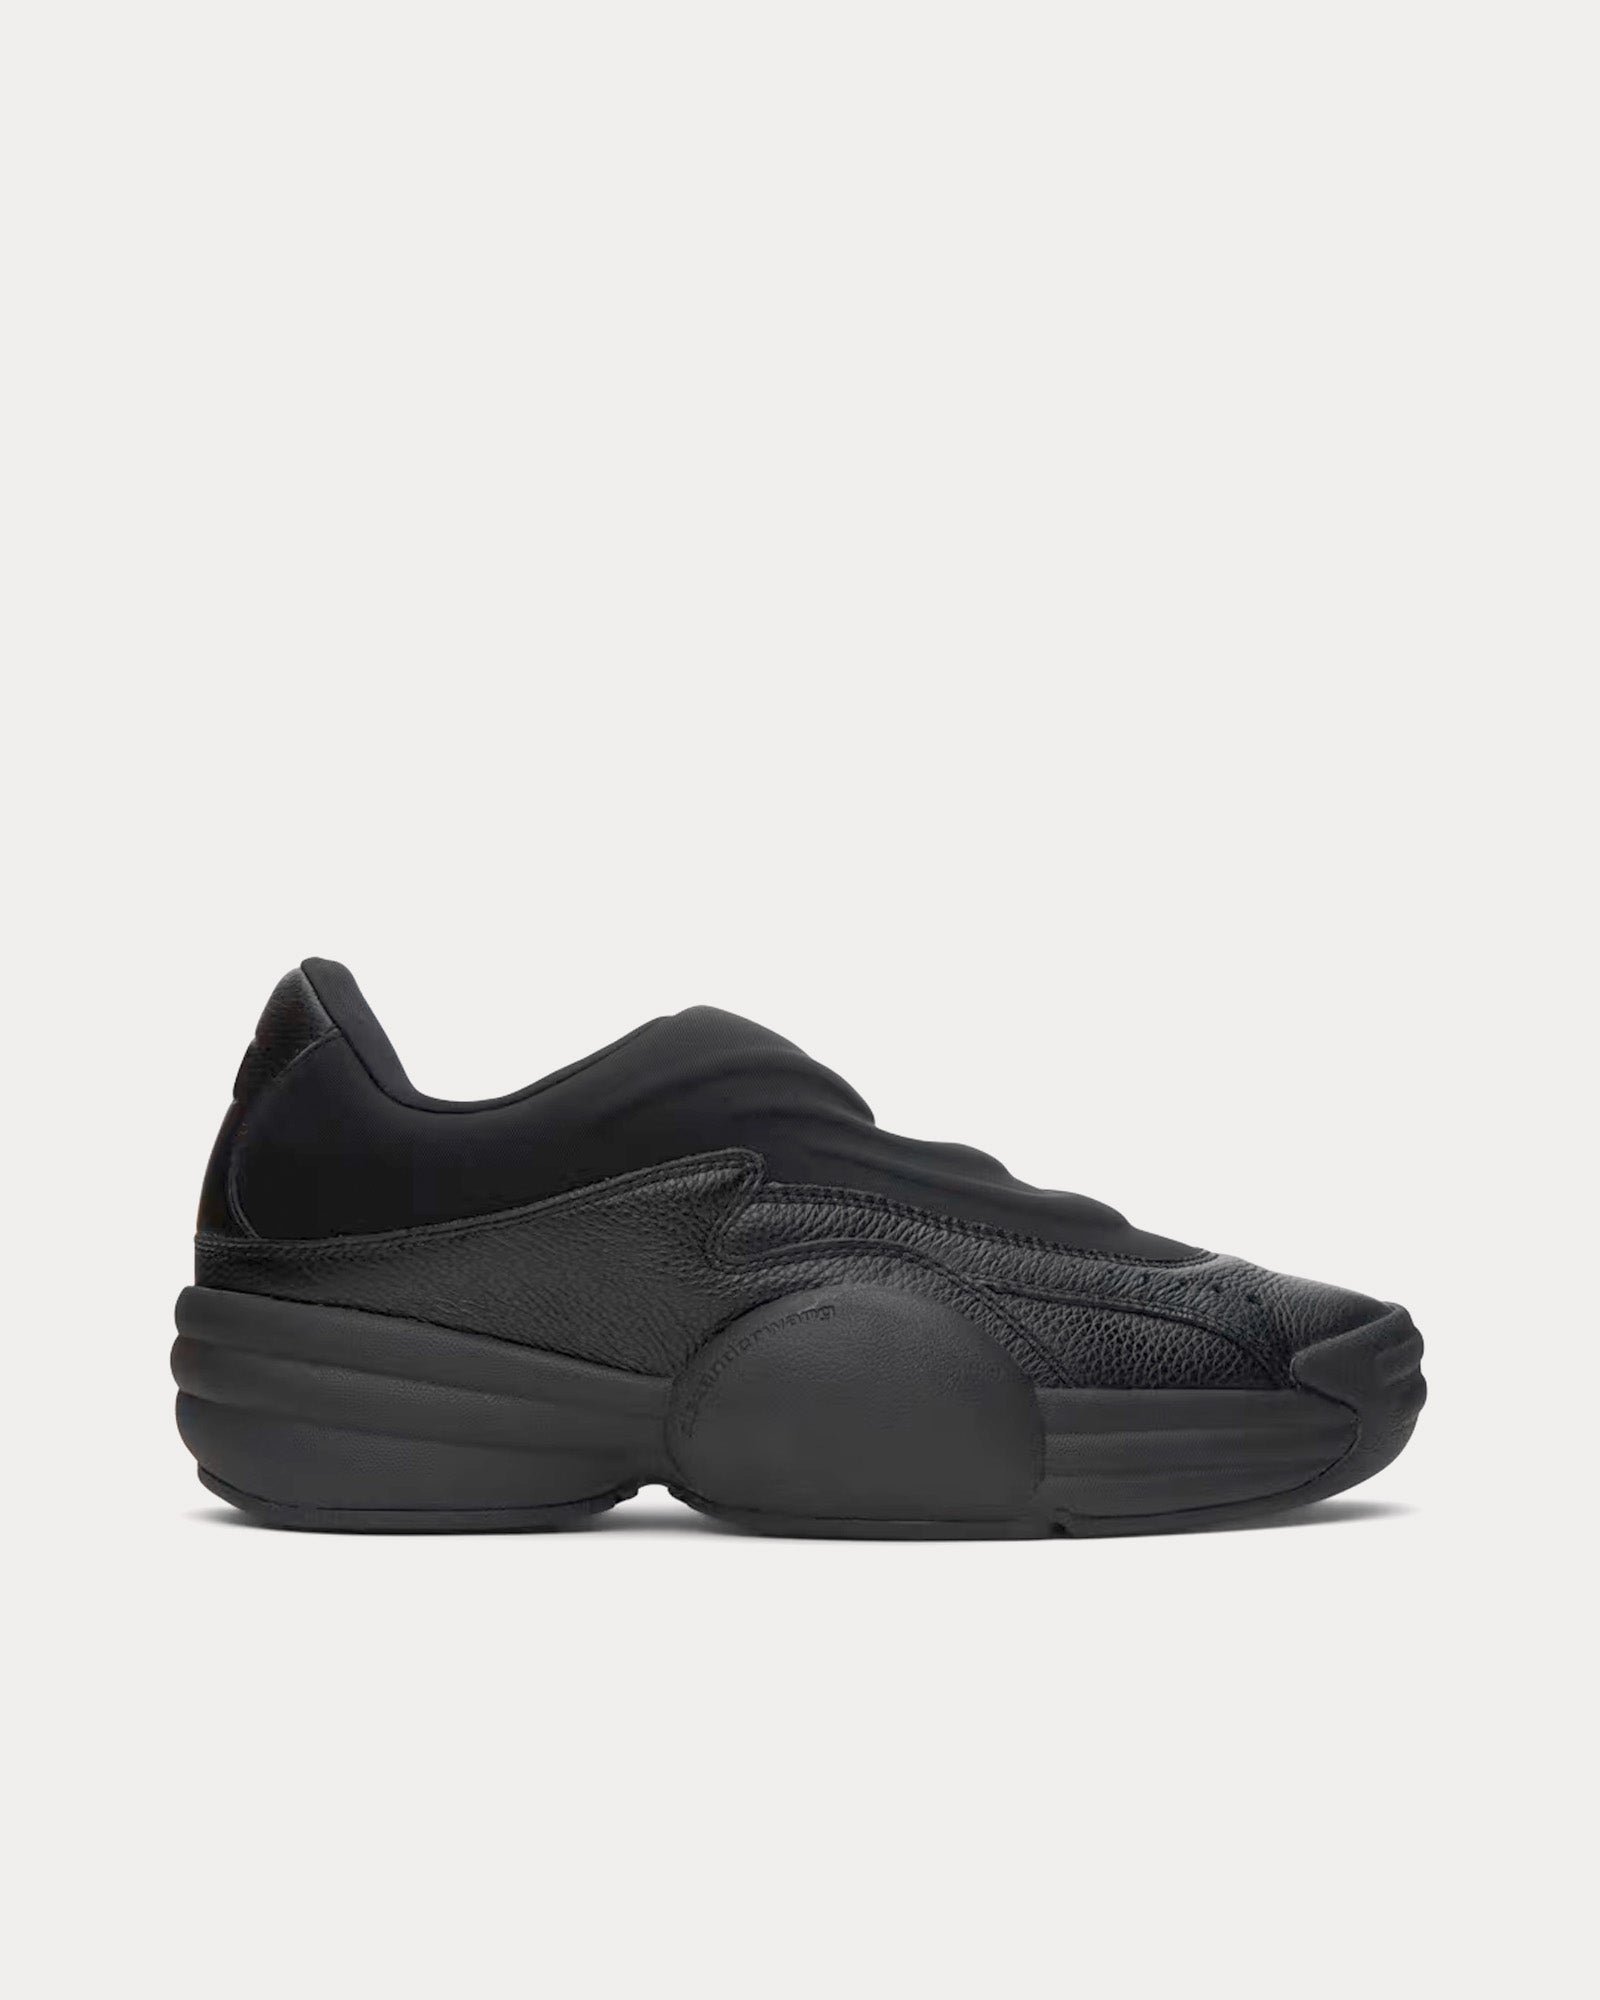 Alexander Wang - AW Hoop Pebble Leather Black Slip On Sneakers